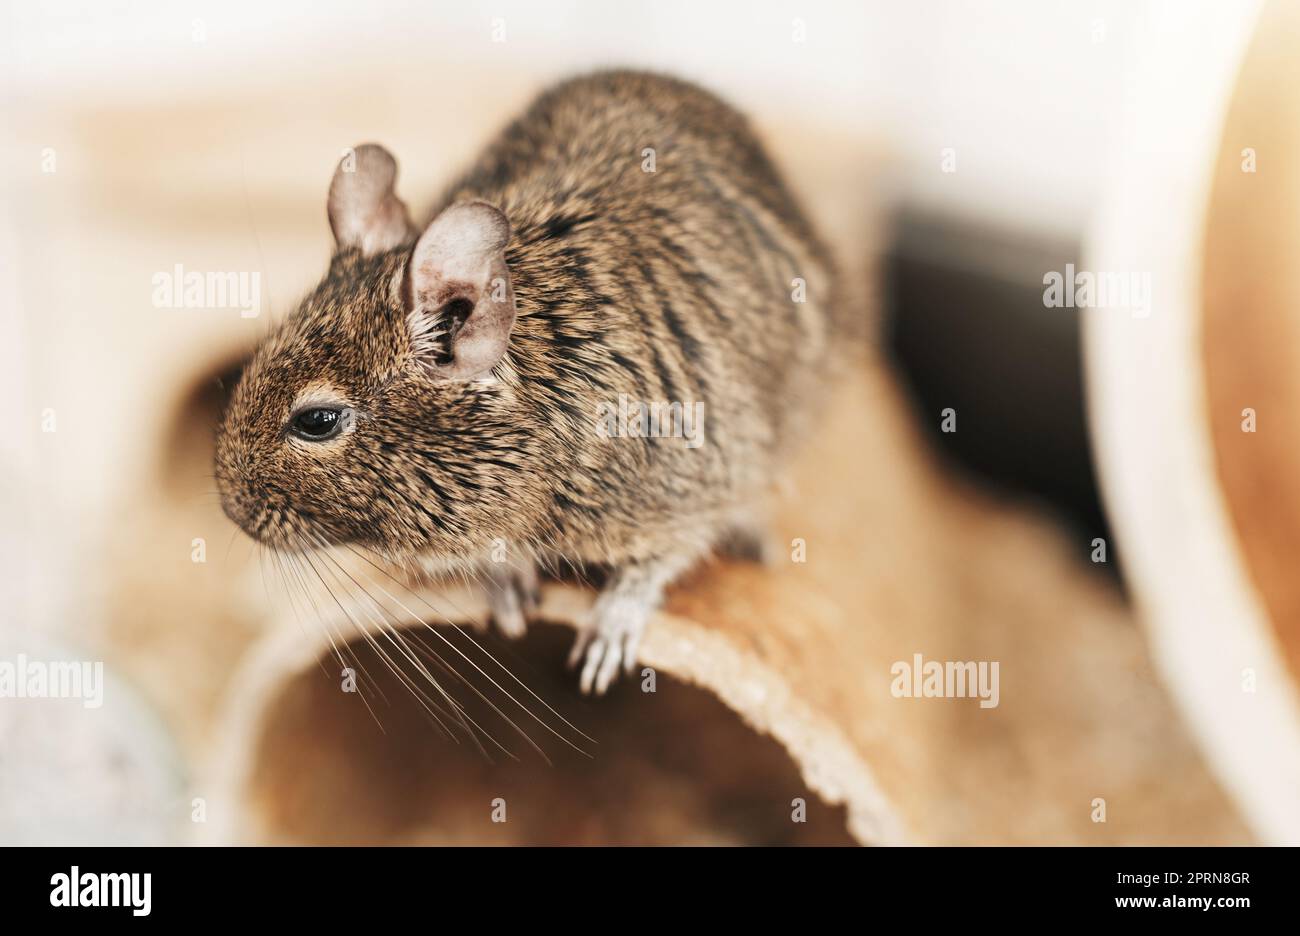 L'écureuil degu, un animal domestique. Petite souris grise mignon Degu. Banque D'Images